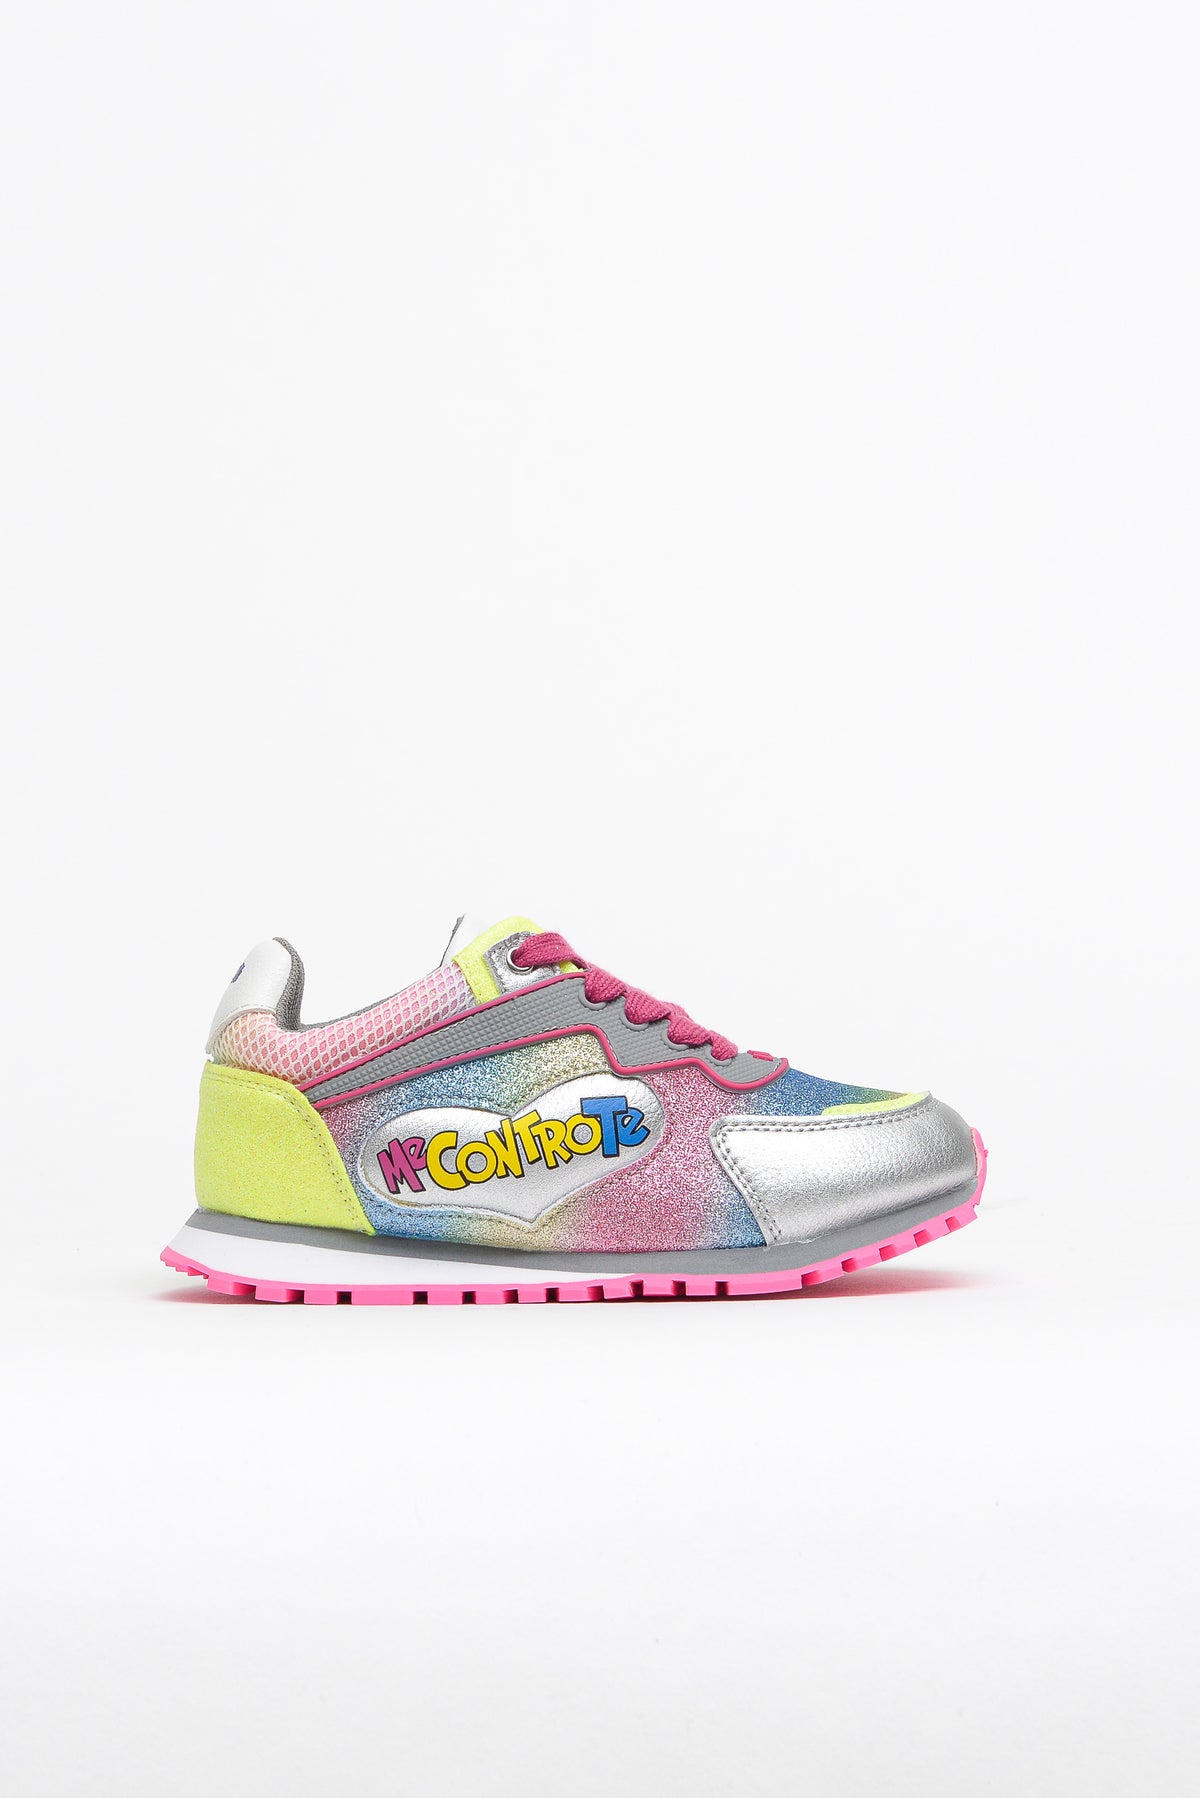 Liu Jo Shoes Sneaker Lacci Multic.+pochette Multicolore Bambina - 2